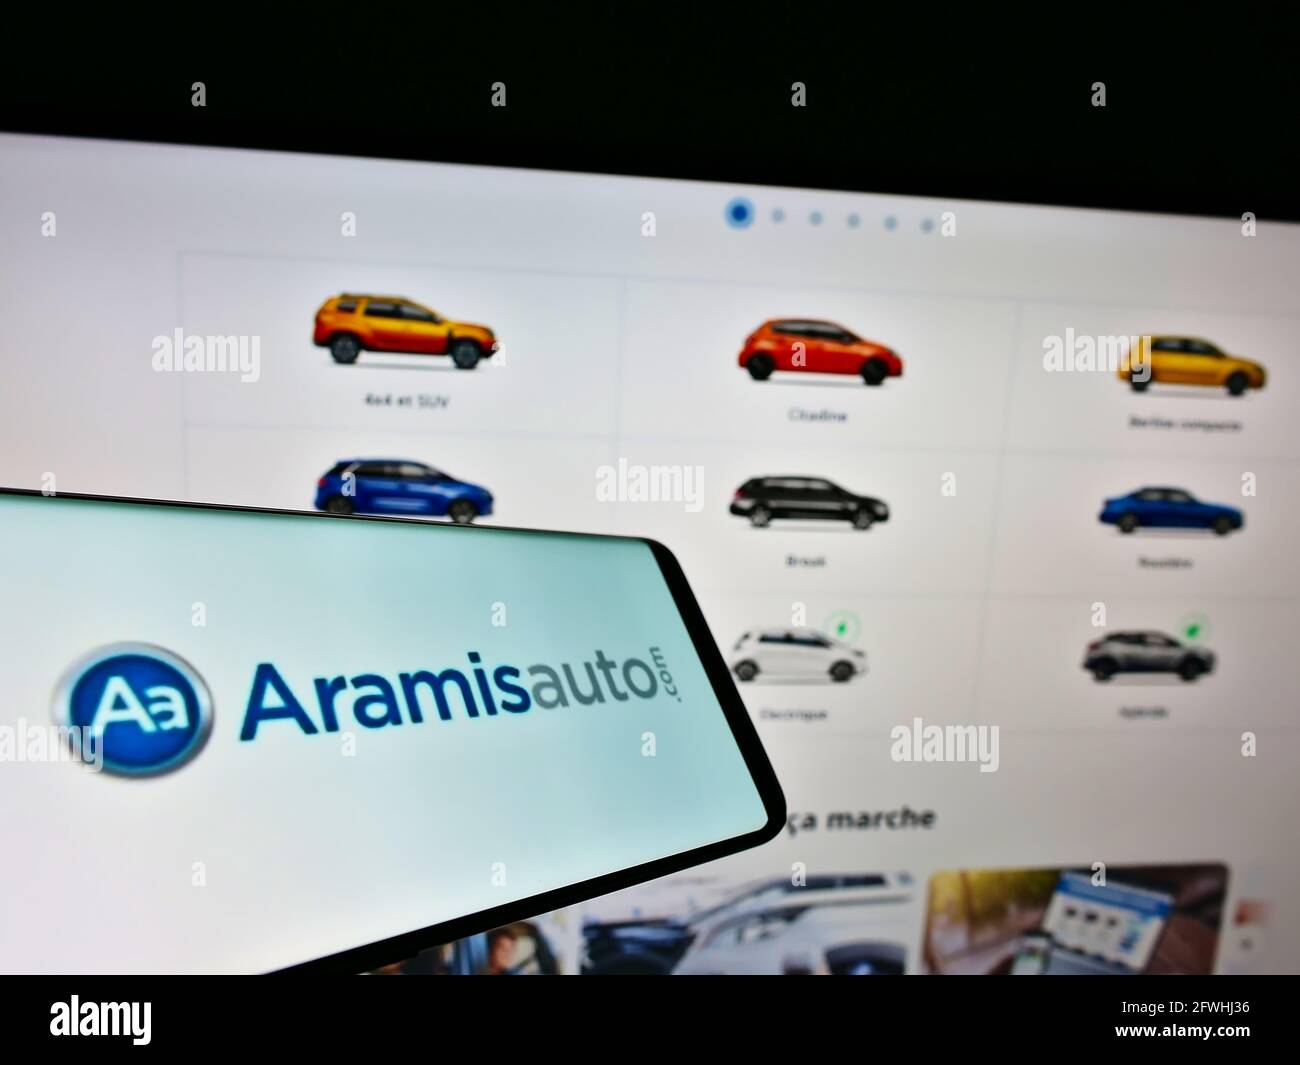 Teléfono móvil con el logotipo del distribuidor de coches en línea francés Aramis SAS (Aramisauto) en la pantalla frente al sitio web. Enfoque en la pantalla central derecha del teléfono. Foto de stock